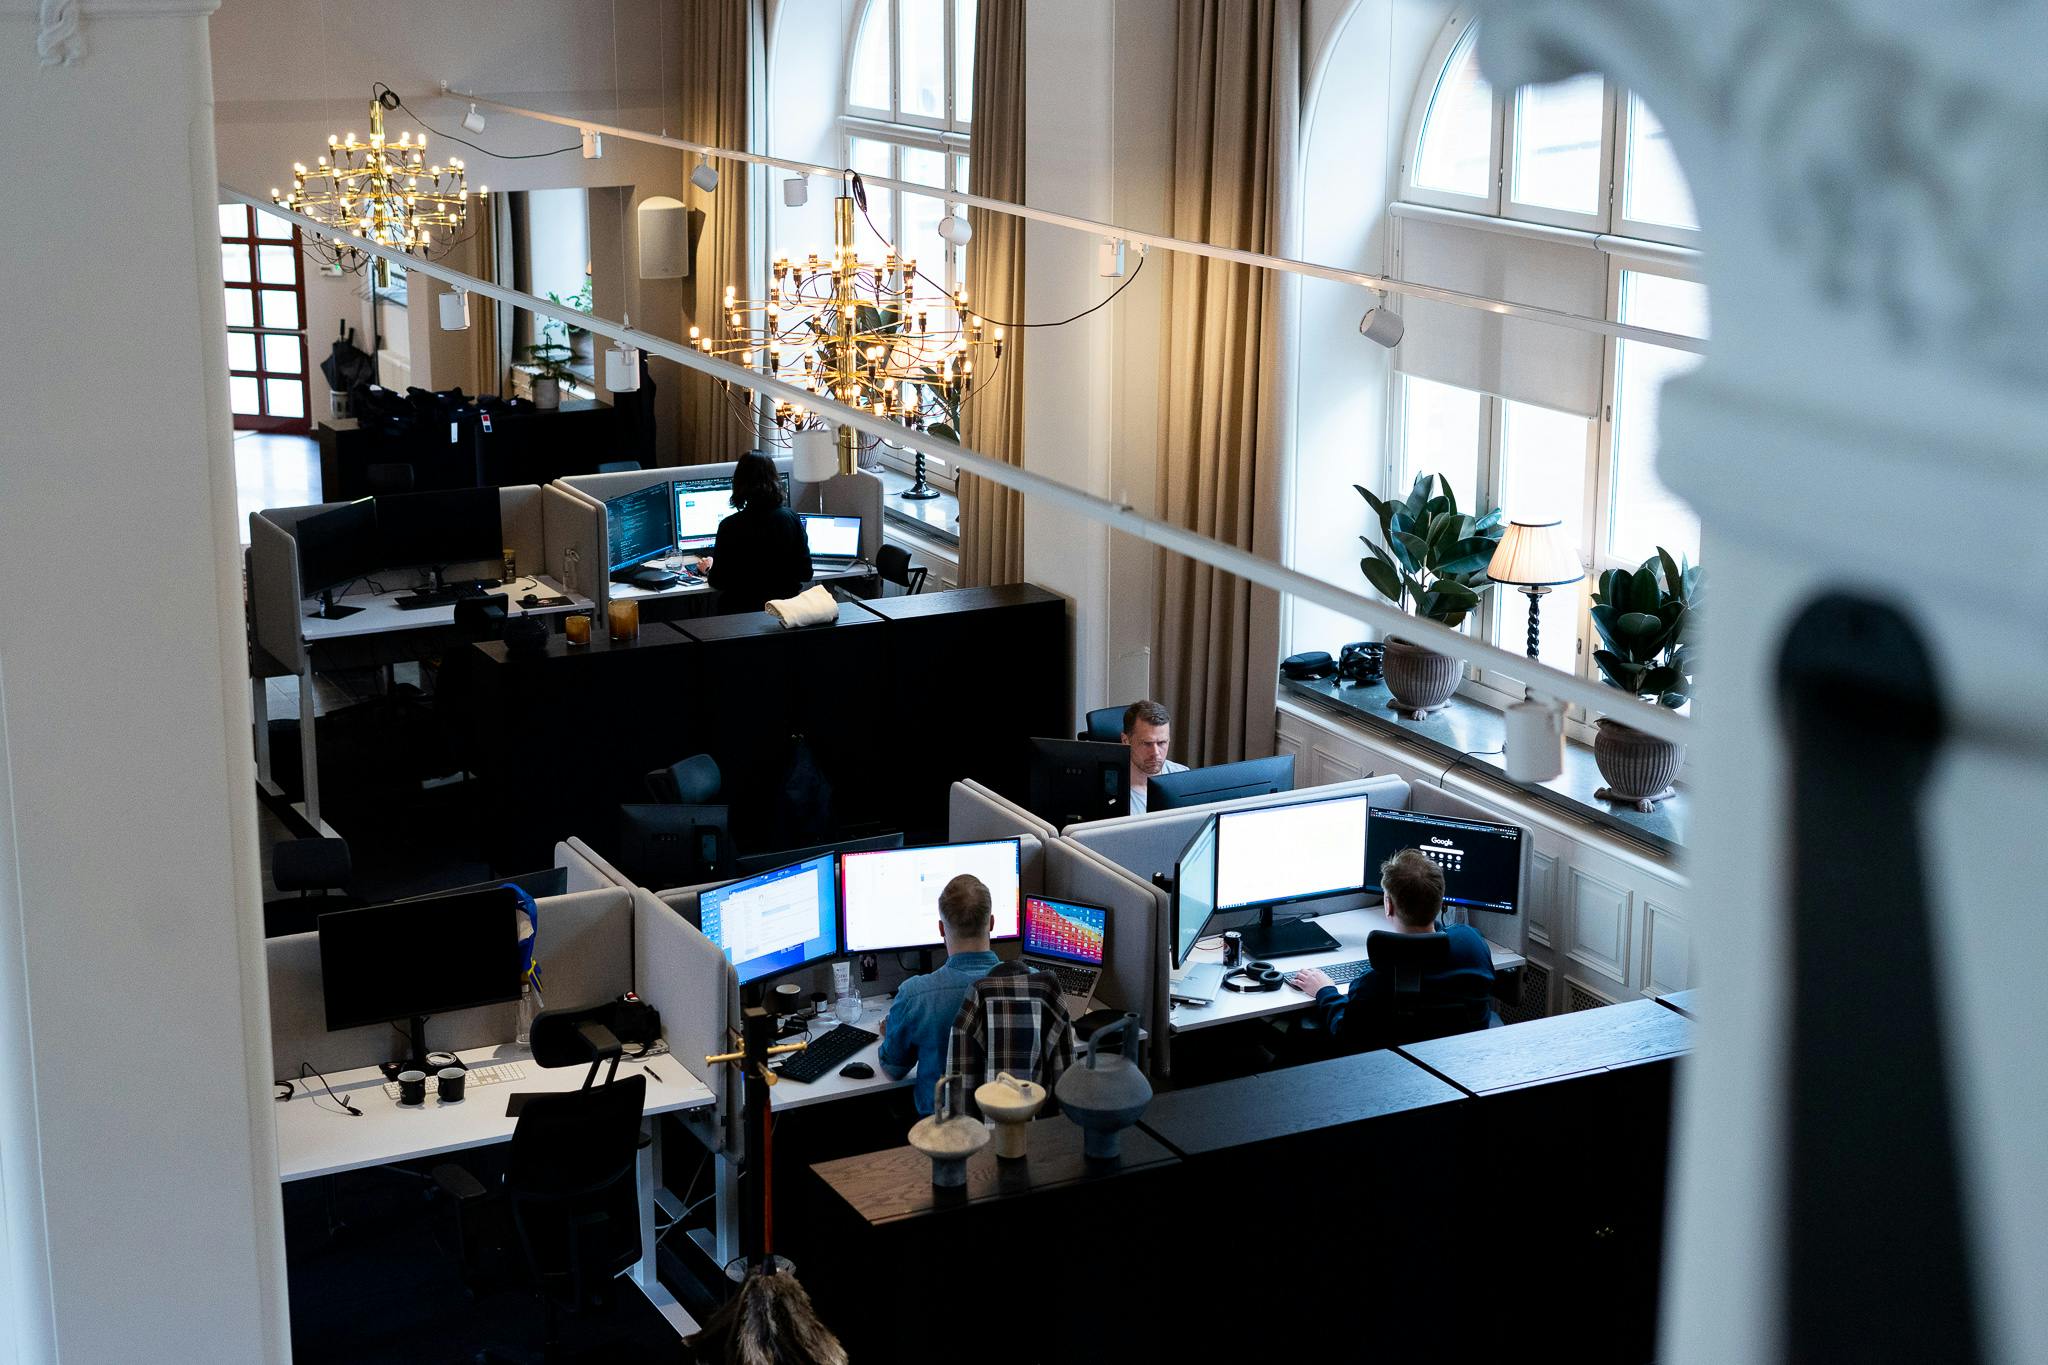 Consids kontor i Karlstad. Medarbetare som jobbar i öppet landskap.